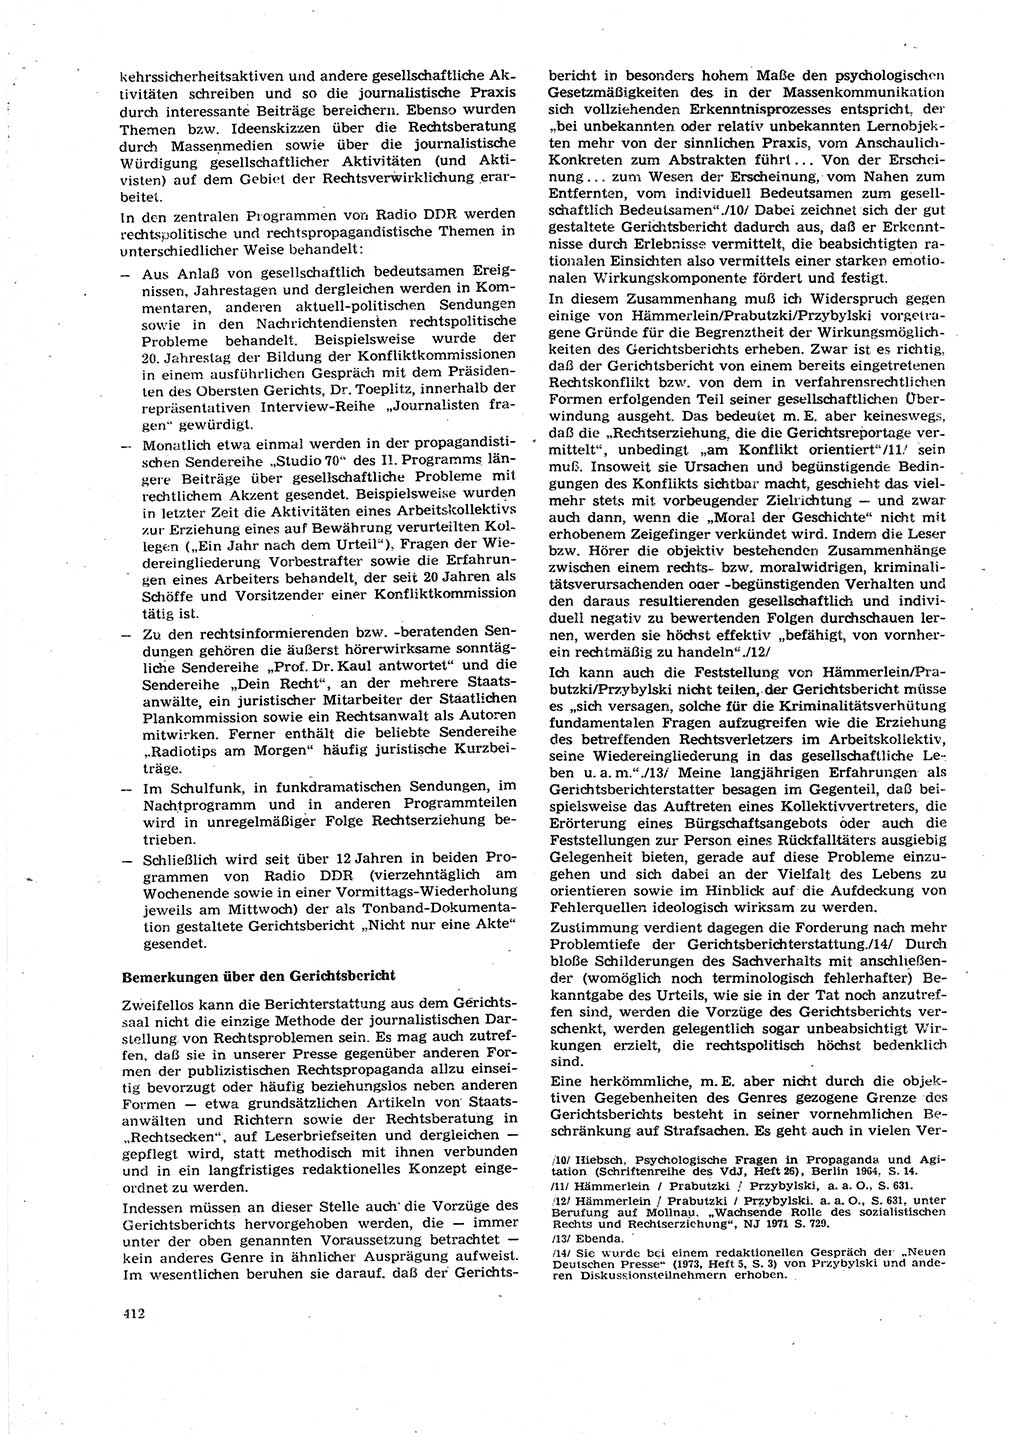 Neue Justiz (NJ), Zeitschrift für Recht und Rechtswissenschaft [Deutsche Demokratische Republik (DDR)], 27. Jahrgang 1973, Seite 412 (NJ DDR 1973, S. 412)